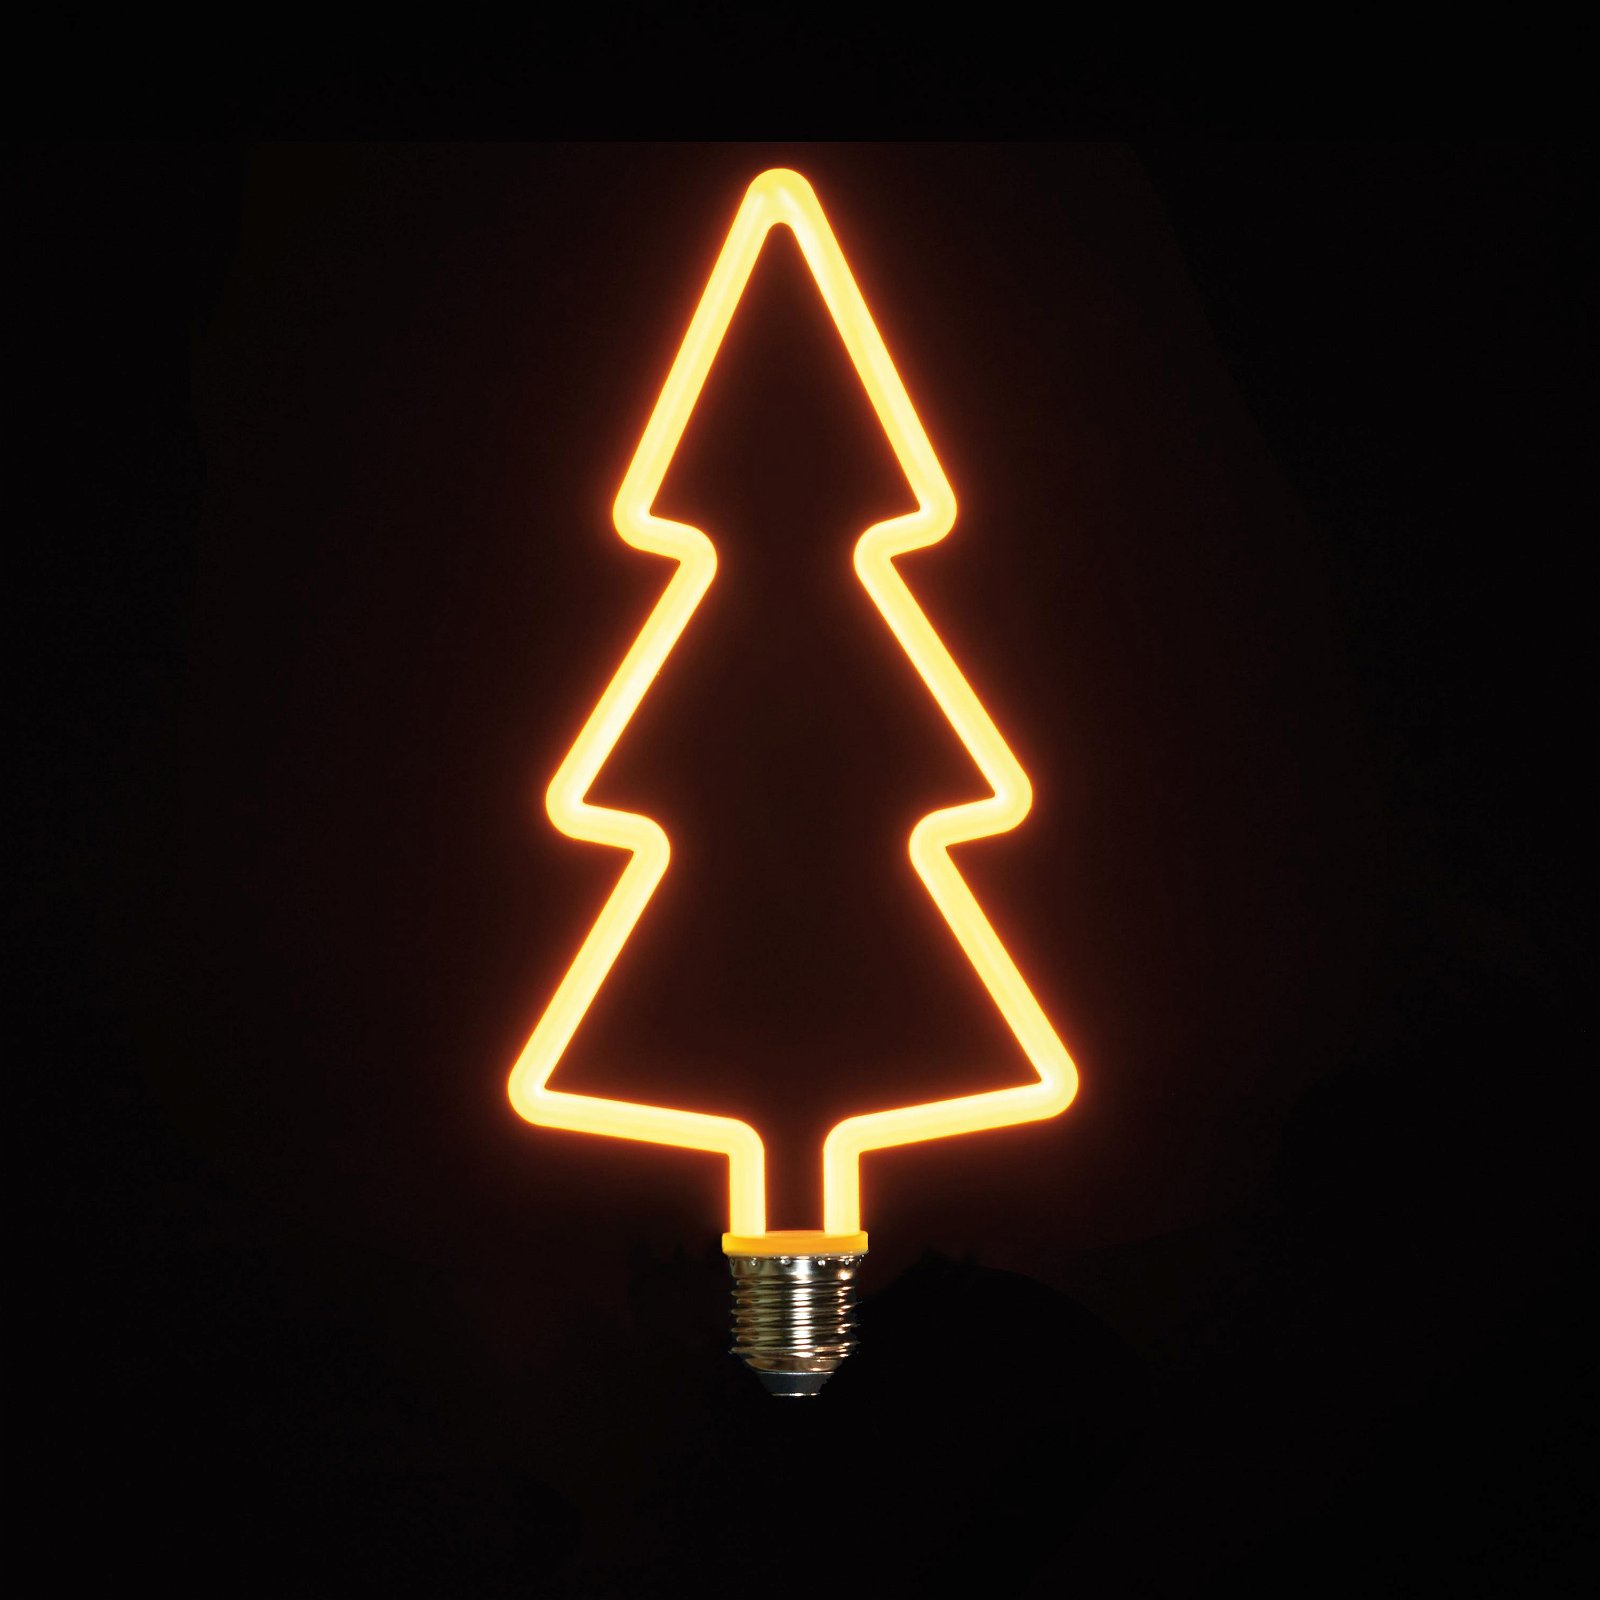 LED-Retrolampe 'Weihnachtsbaum', dimmbar, 110 x 240 mm